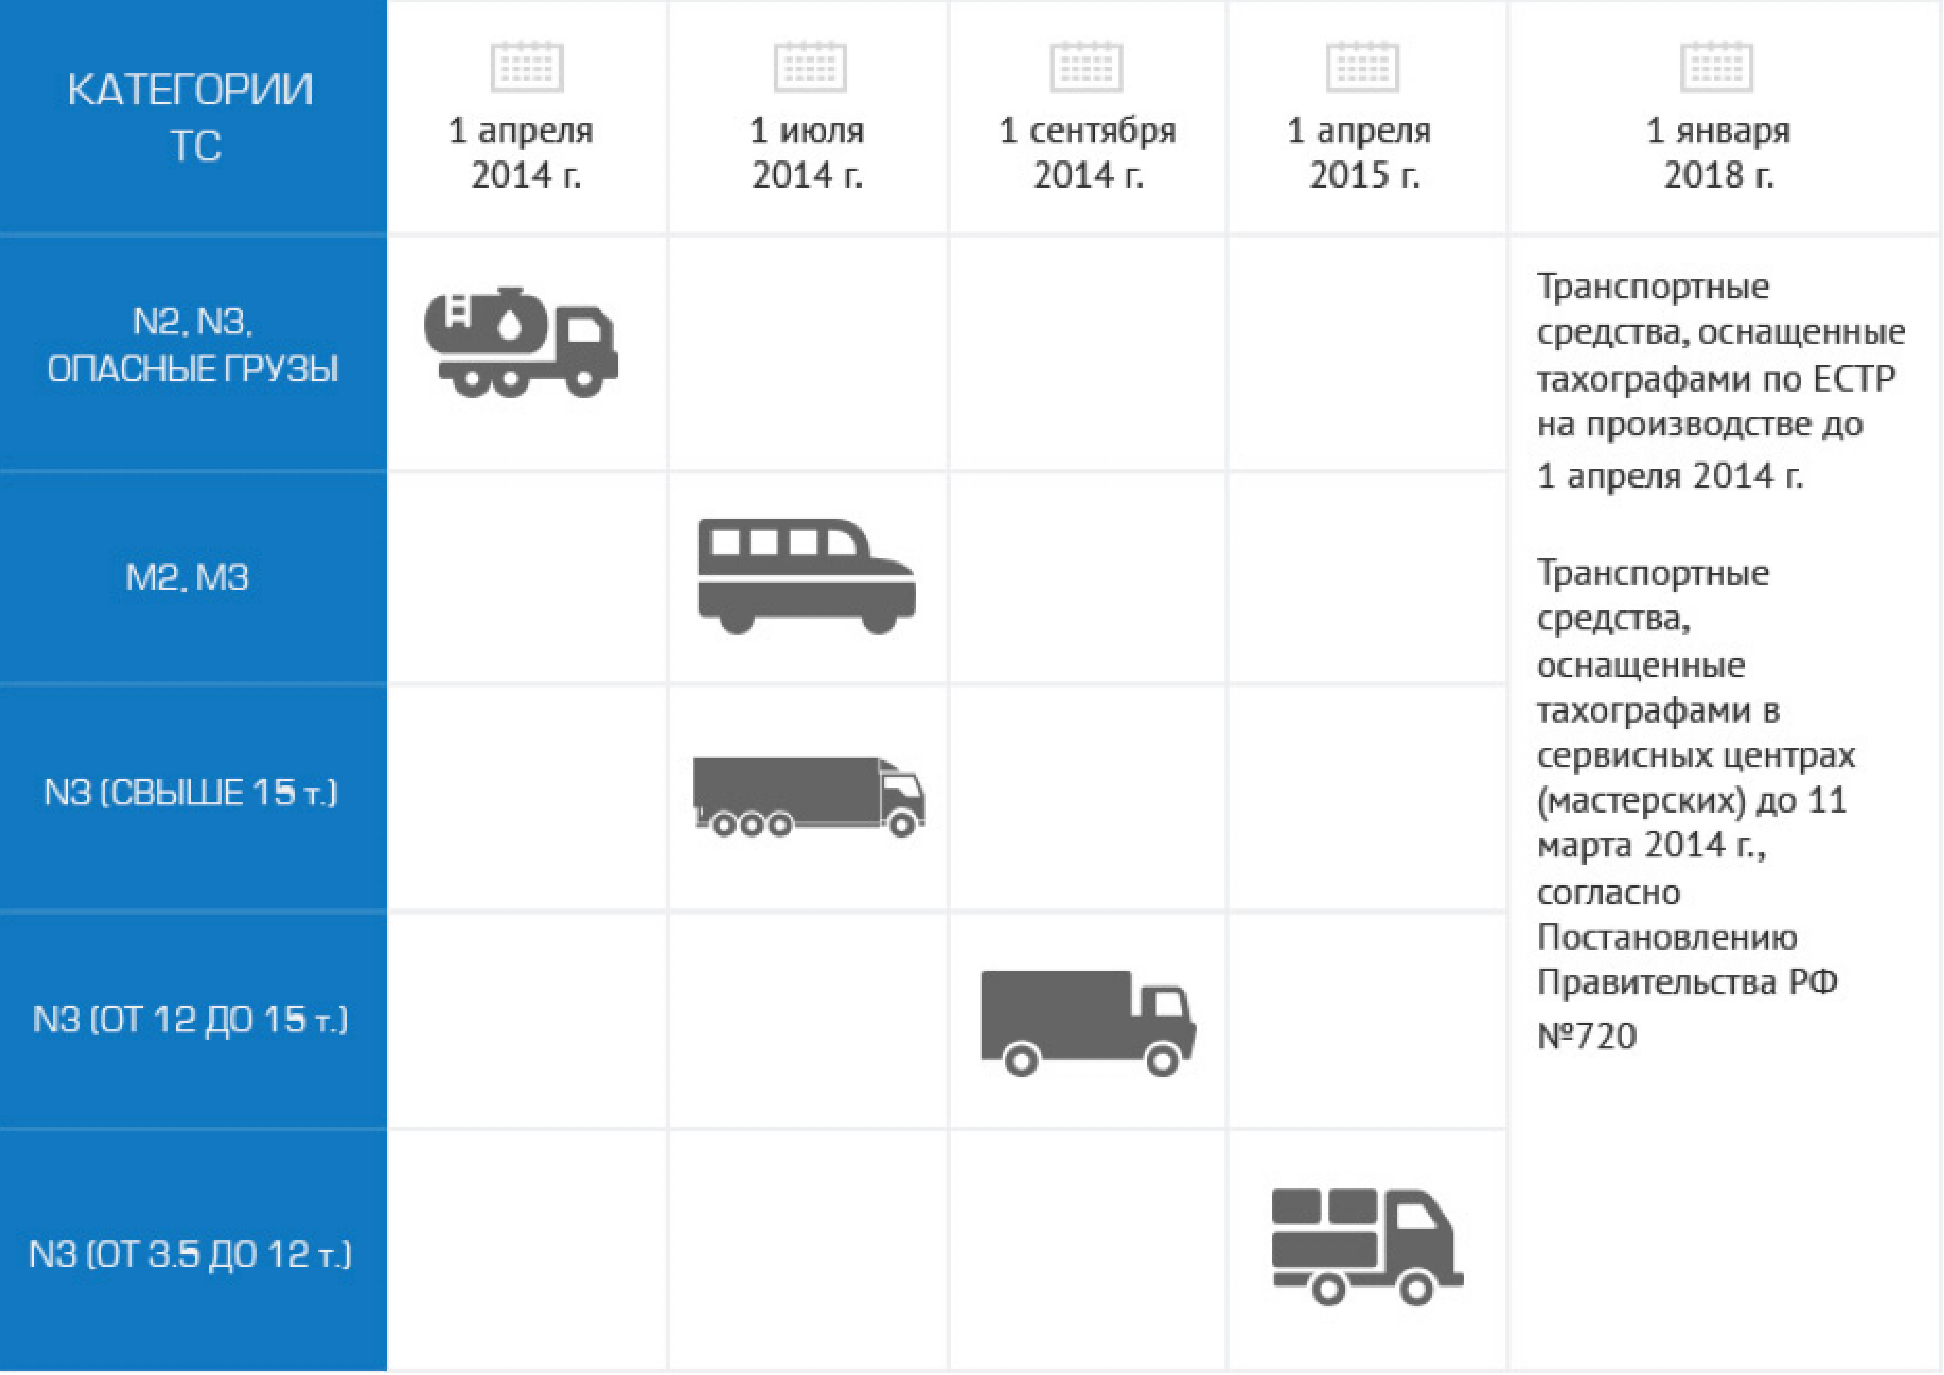 Эксплуатация автобусов категории м2 и м3